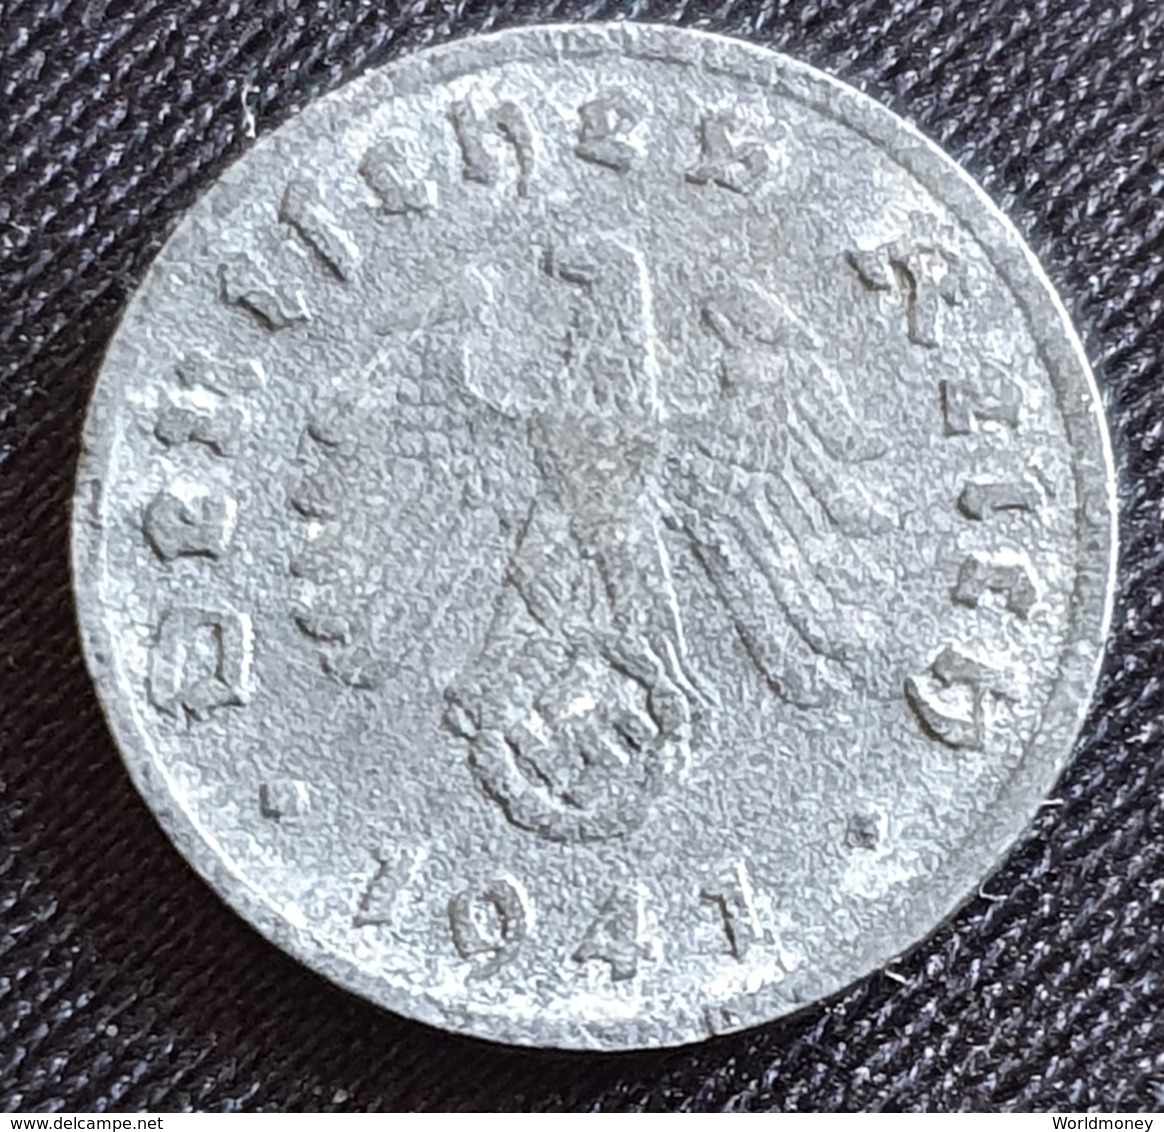 Germany  1 REICHSPFENNIG  1941 - G. - 1 Reichspfennig